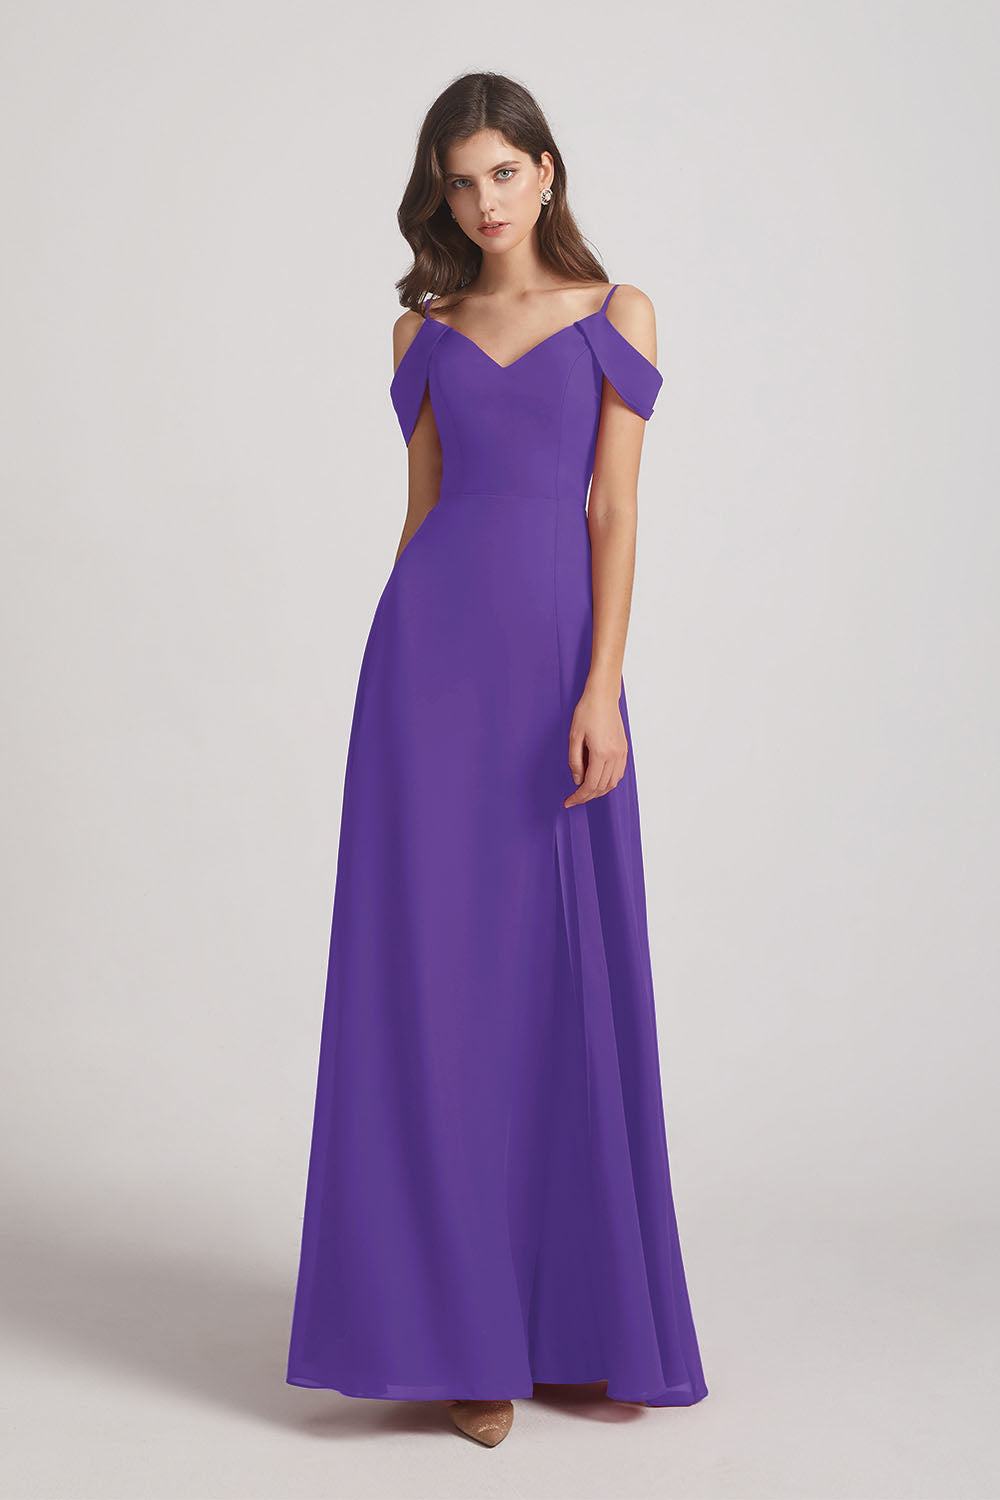 Alfa Bridal Purple Chiffon Cold Shoulder V-Neck Bridesmaid Dresses with Slit (AF0093)